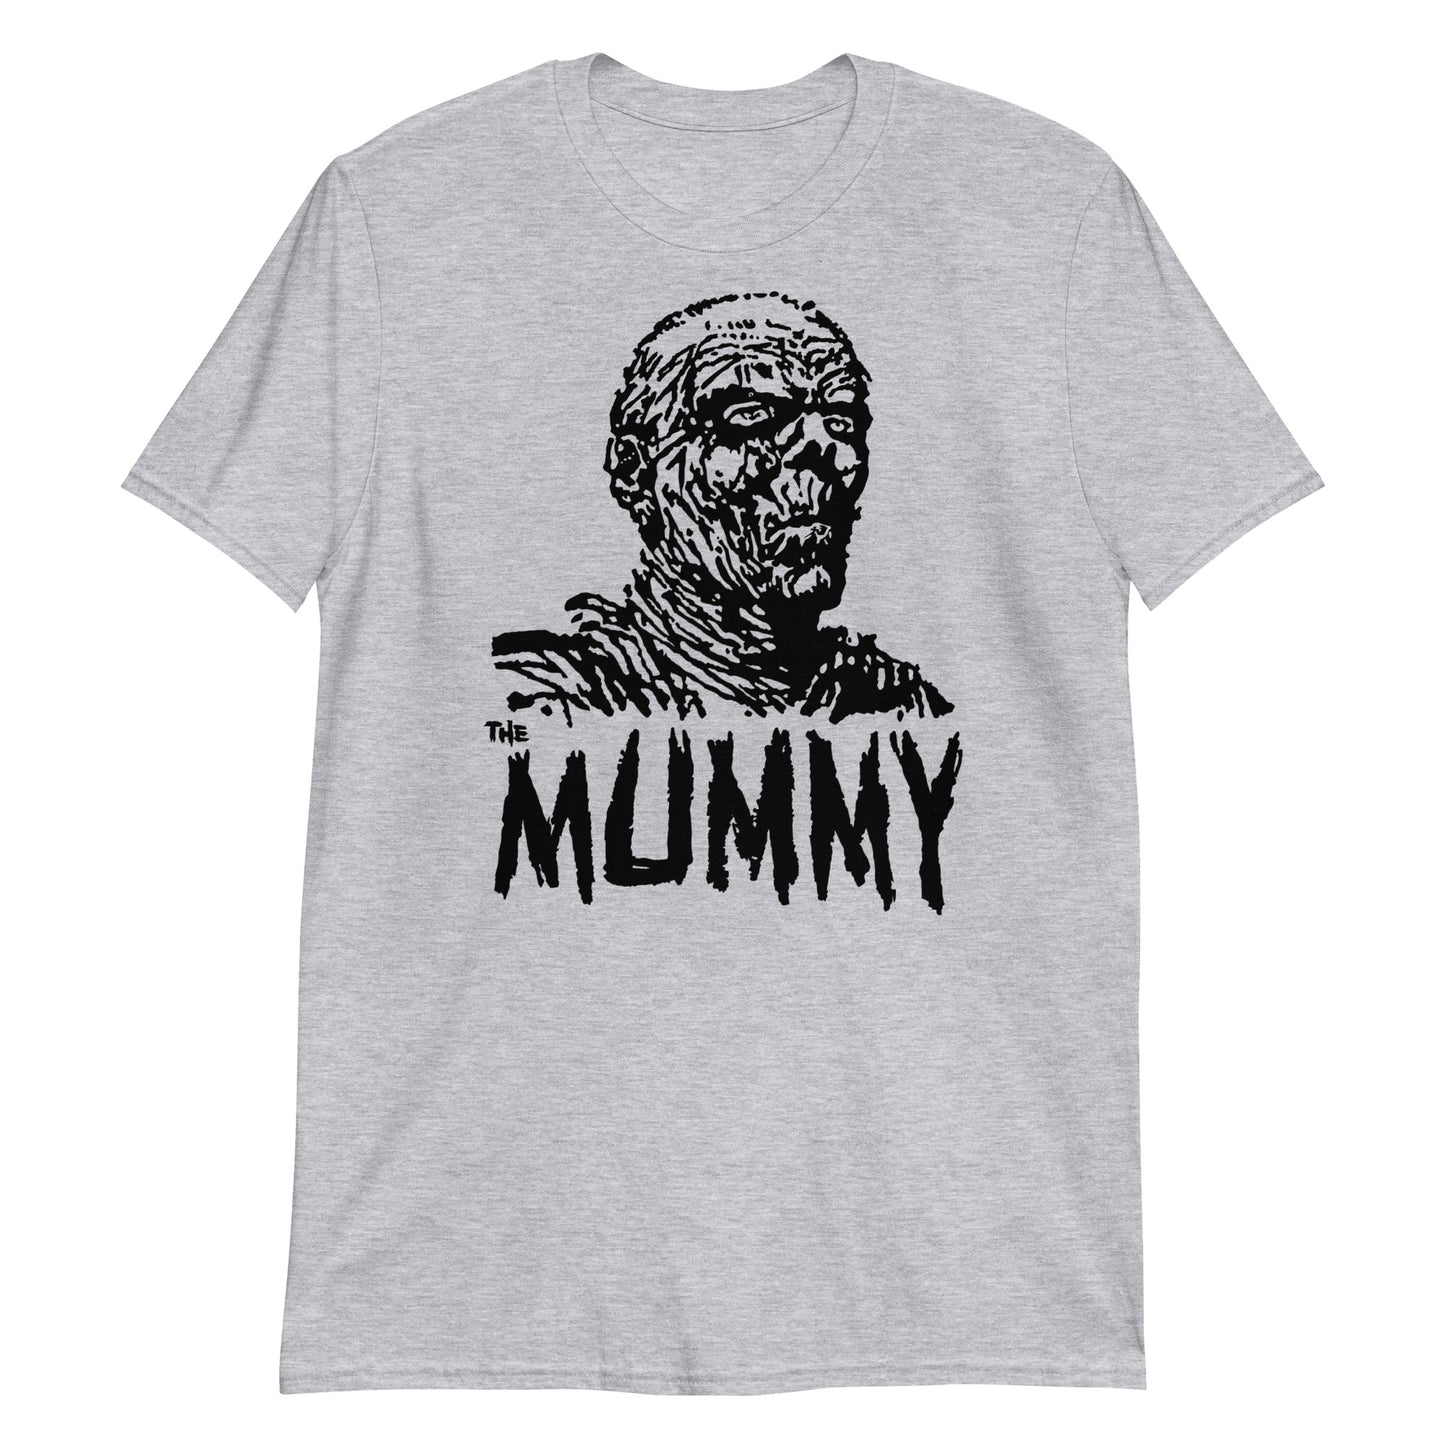 The Mummy - Short-Sleeve Unisex T-Shirt